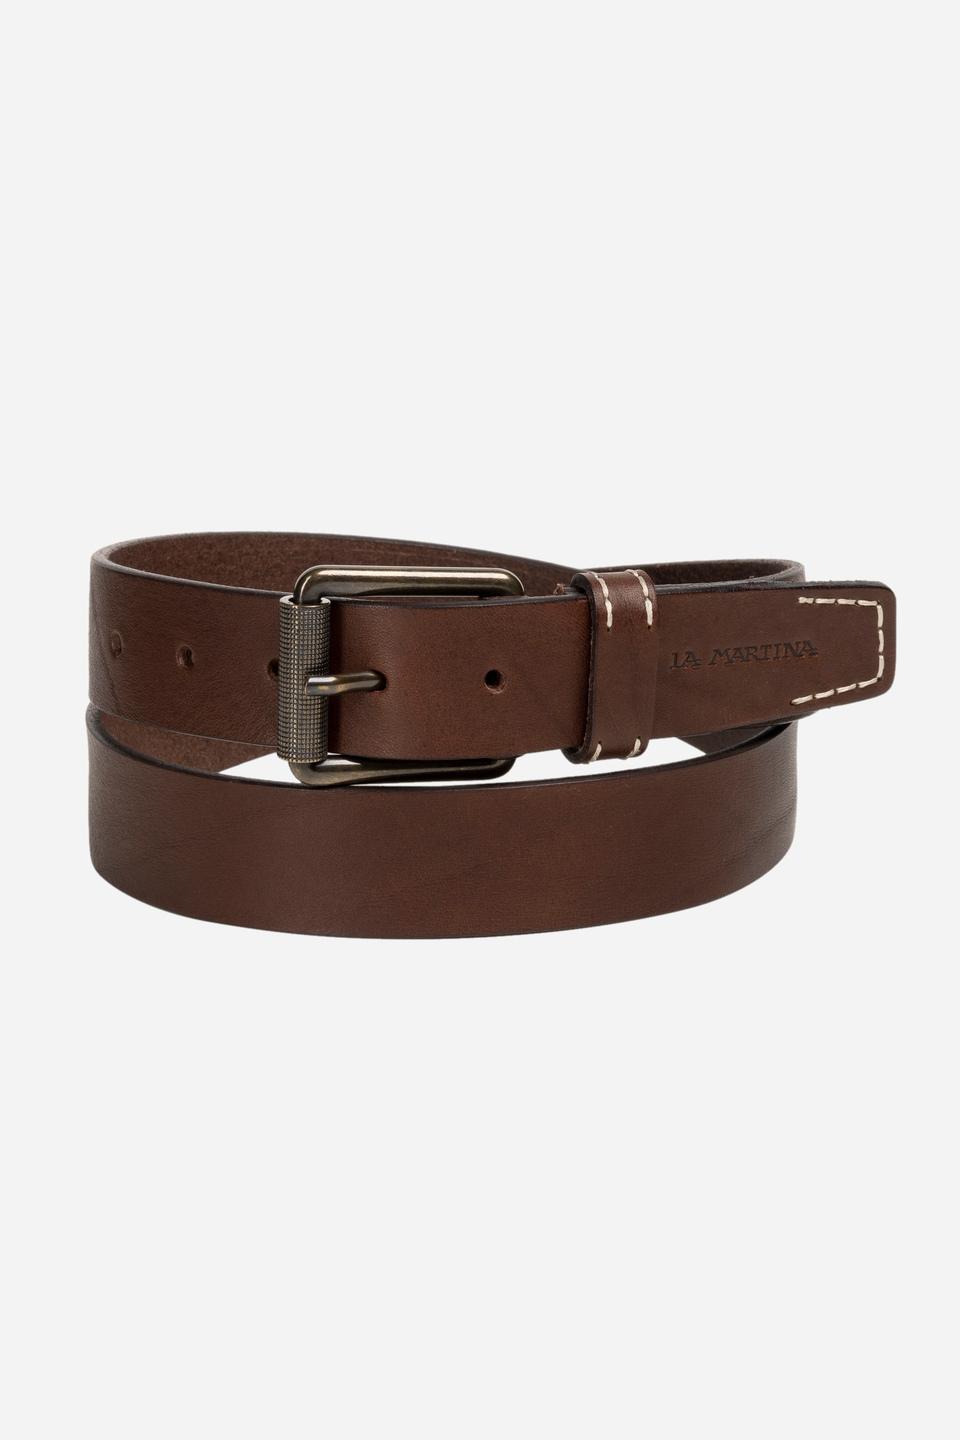 Men's belt in shiny calfskin | La Martina - Official Online Shop